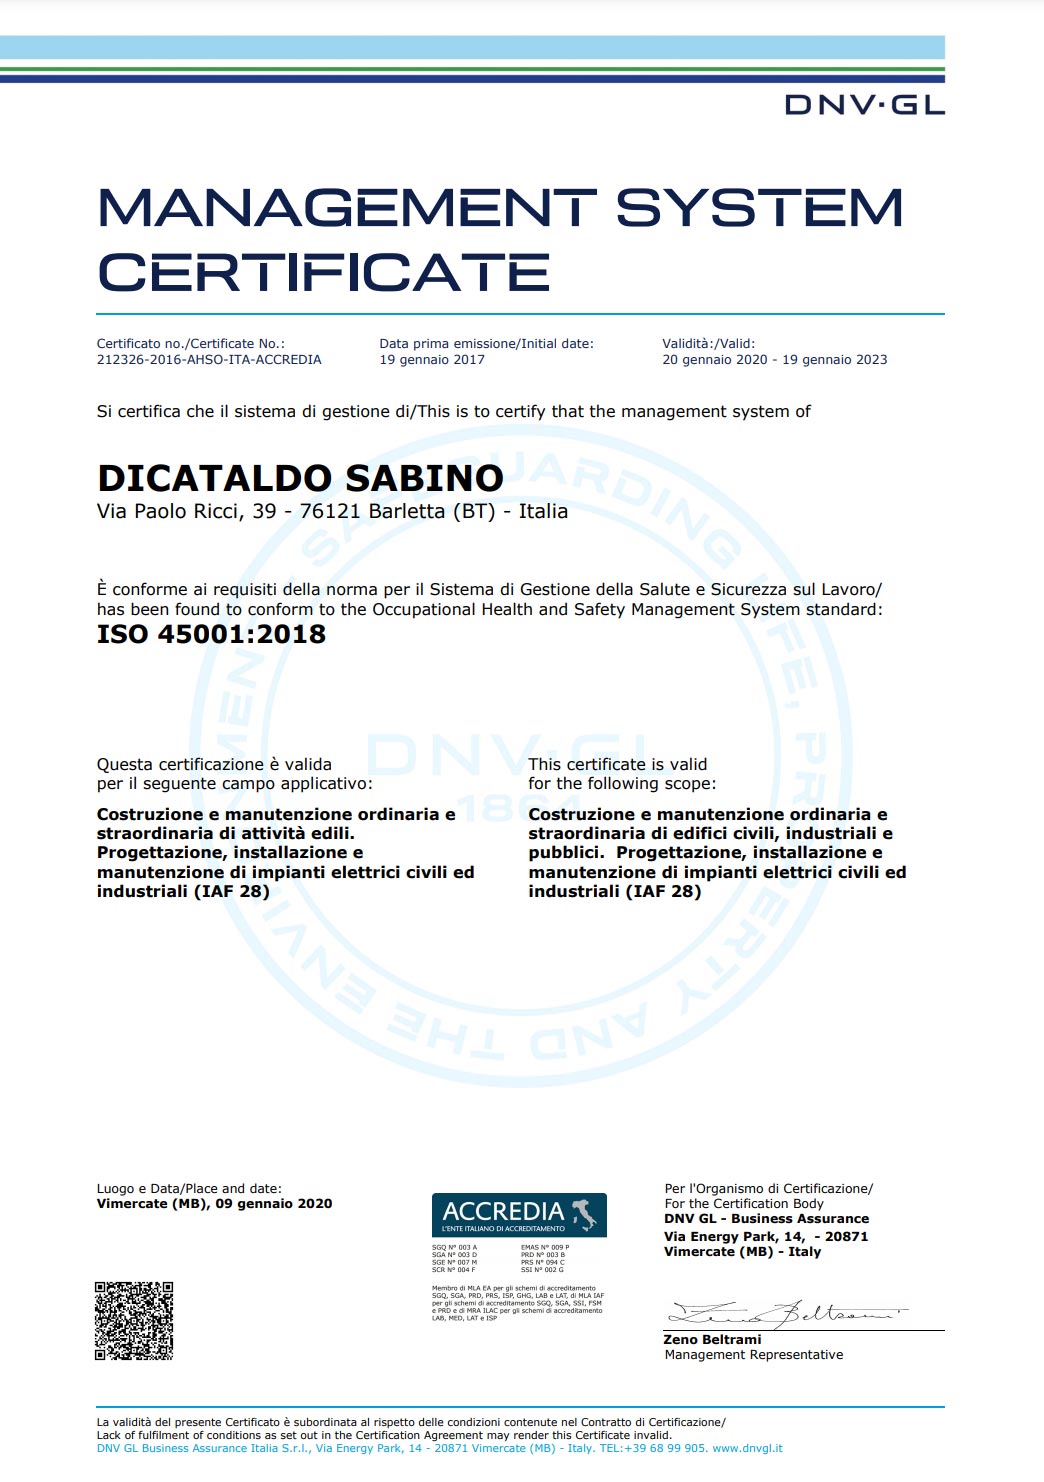 CERTIFICAZIONE ISO 45001